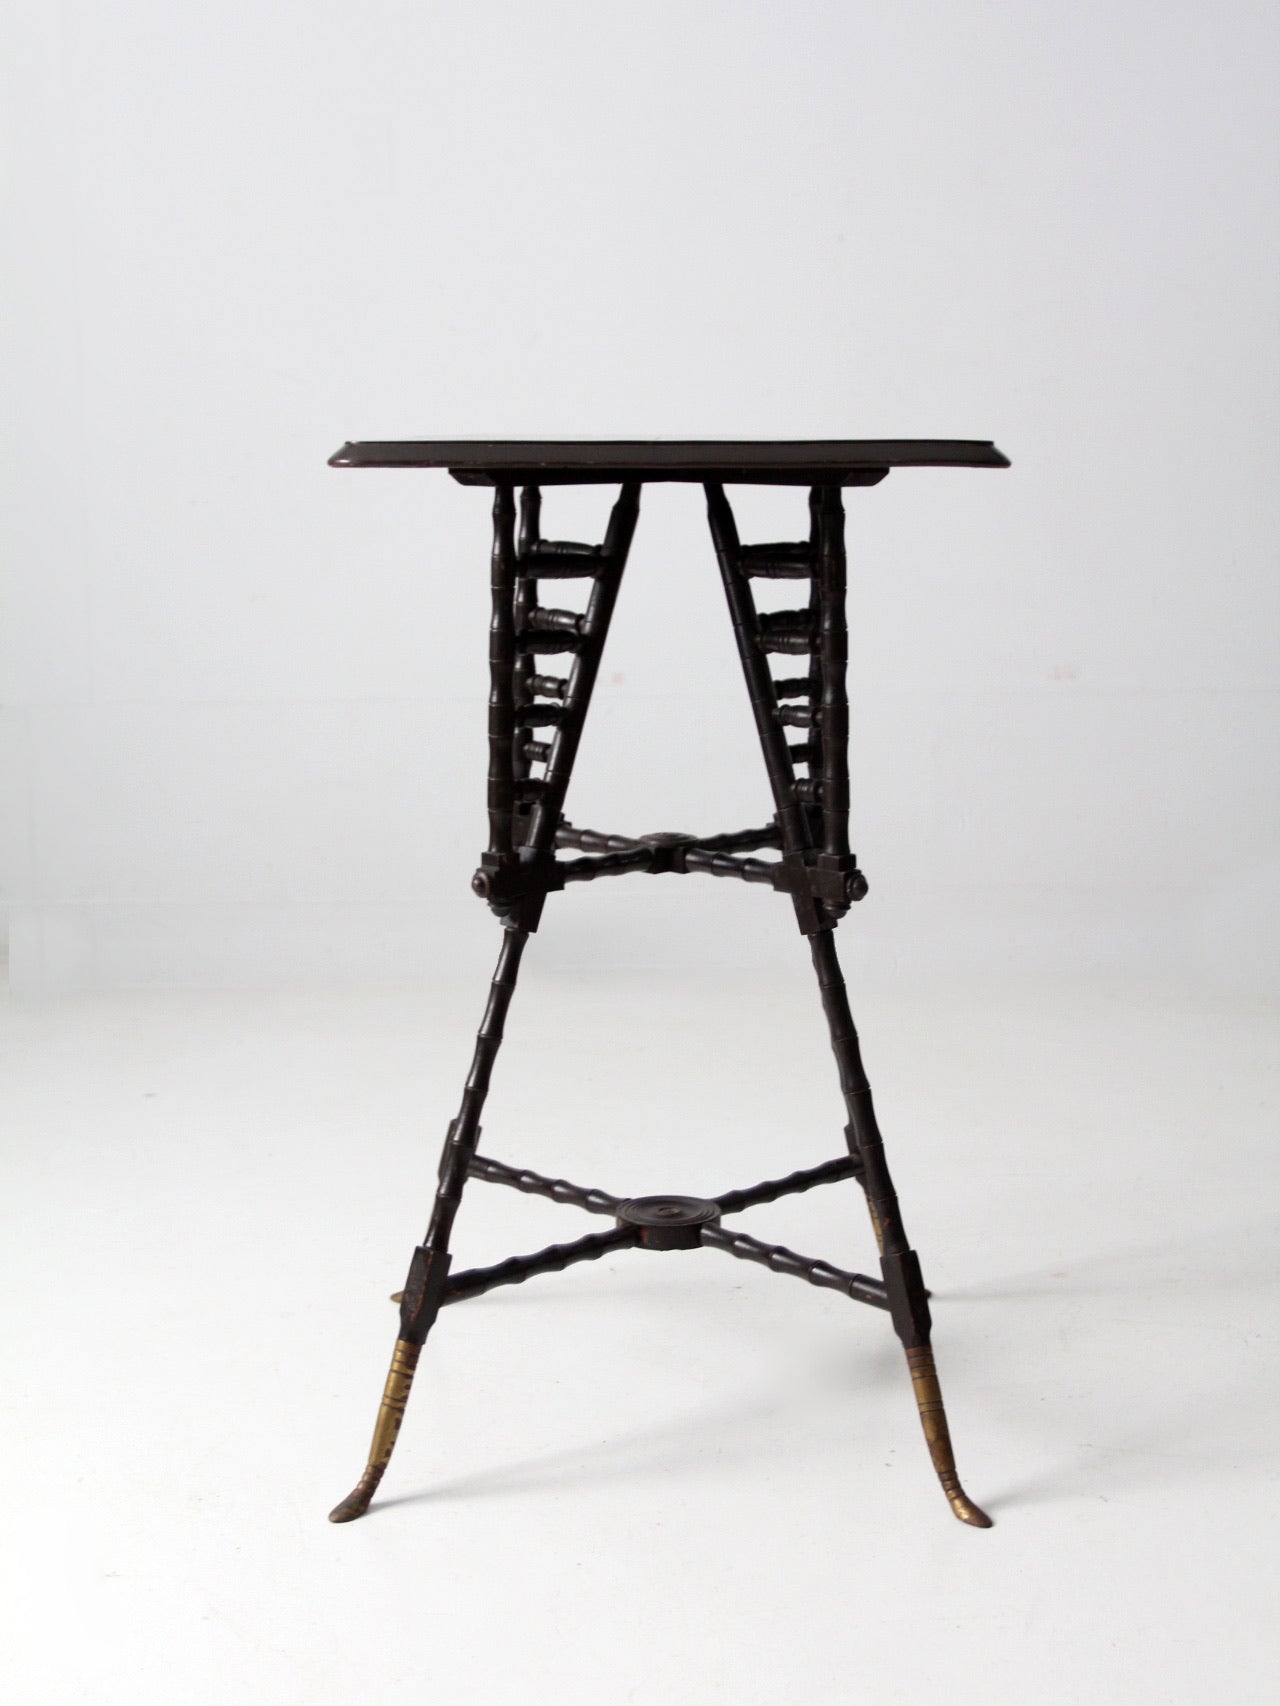 antique end table